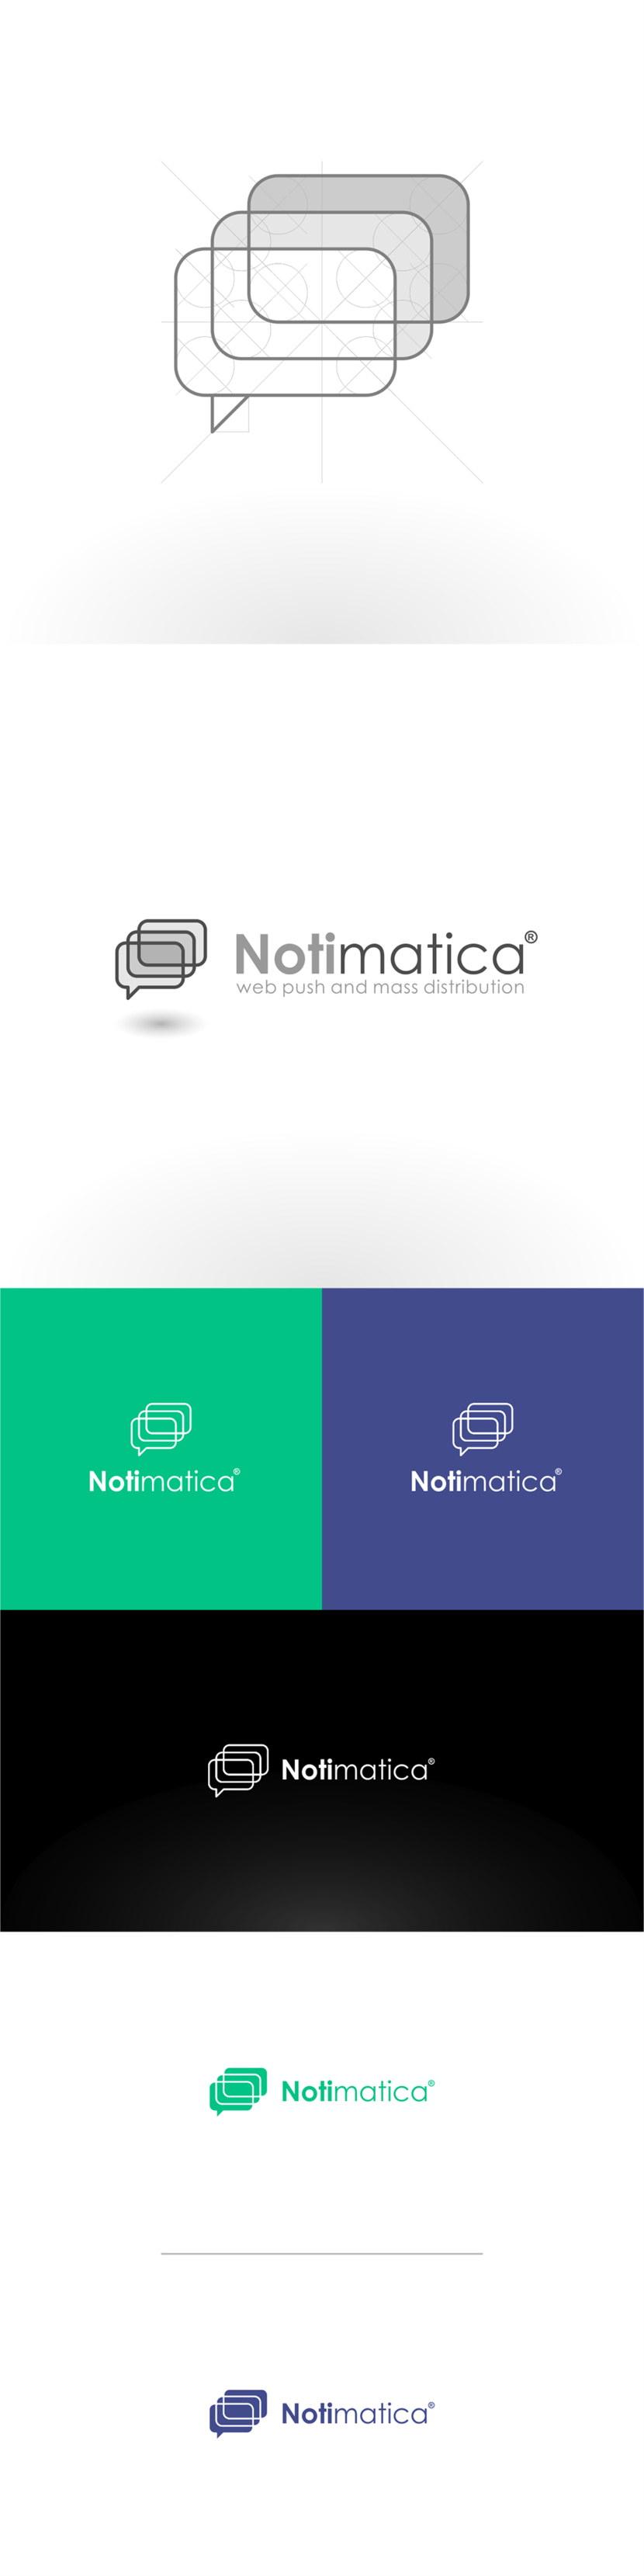 + - Разработать логотип веб-сервиса Notimatica.io